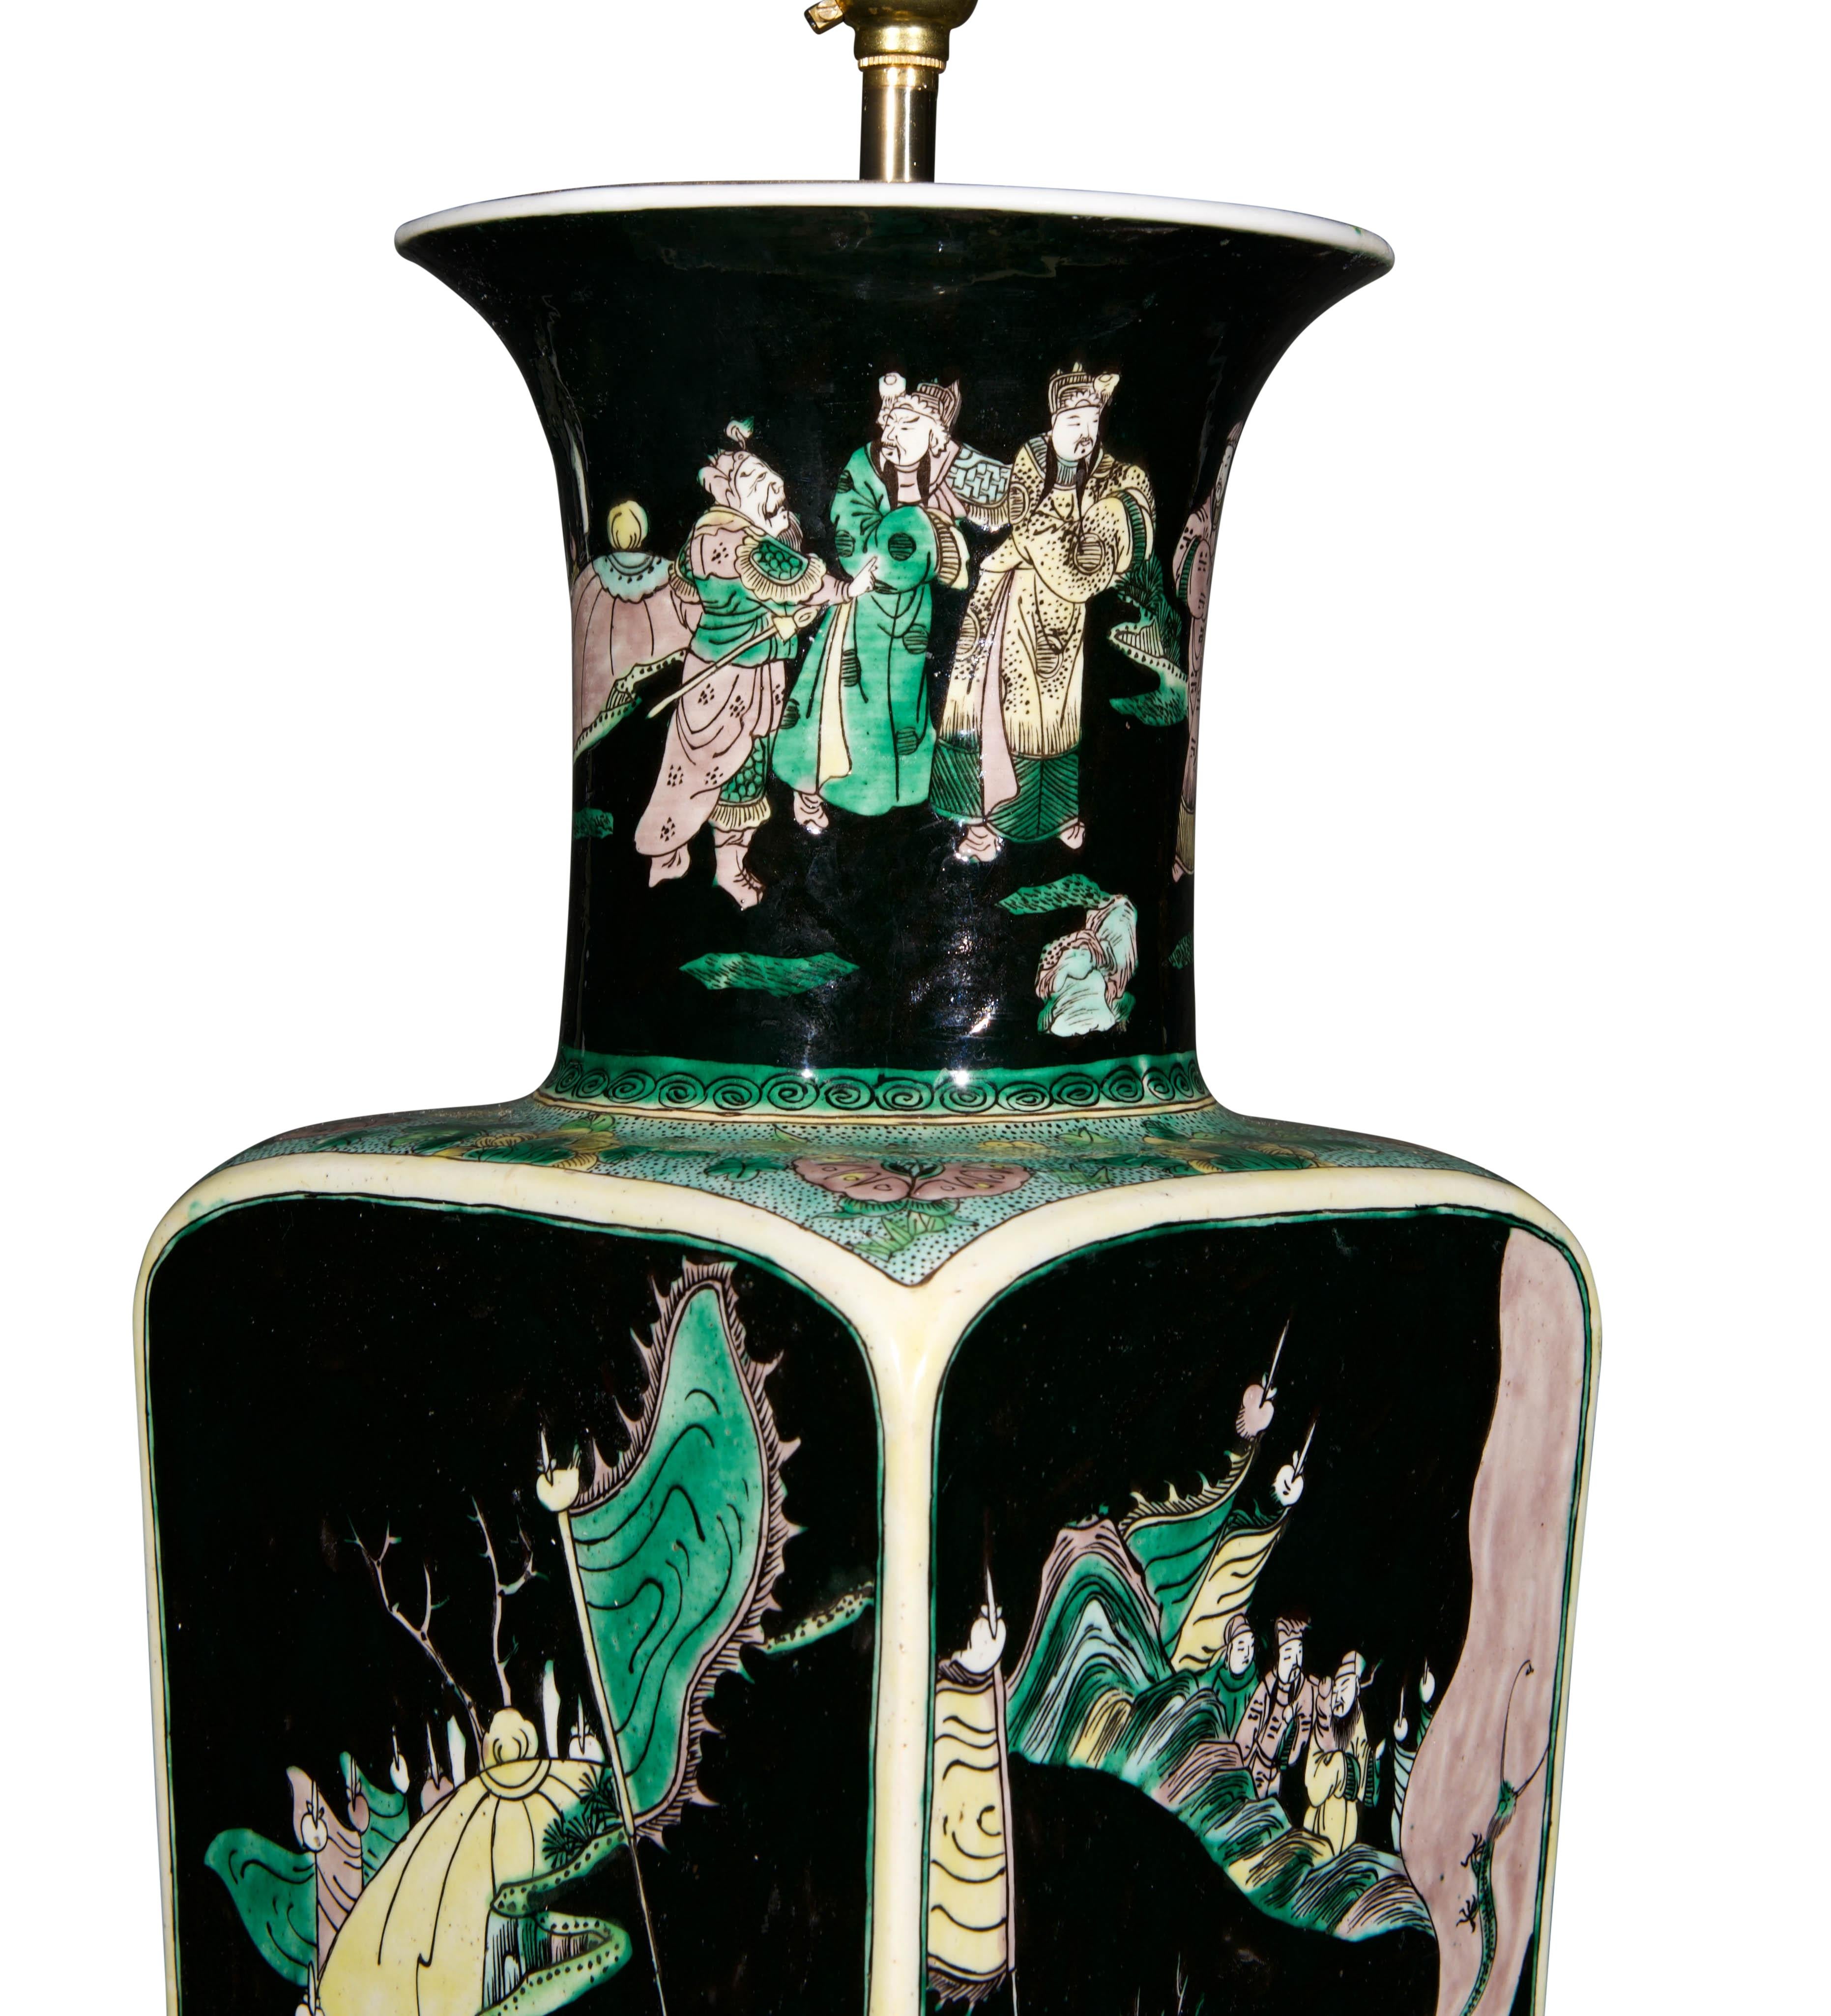 Un beau vase de la dynastie Qing de la fin du 19ème siècle, de forme carrée avec un col circulaire évasé, décoré de la palette de la famille noire avec des détails verts, avec sept guerriers dans une scène continue dans un paysage stylisé,